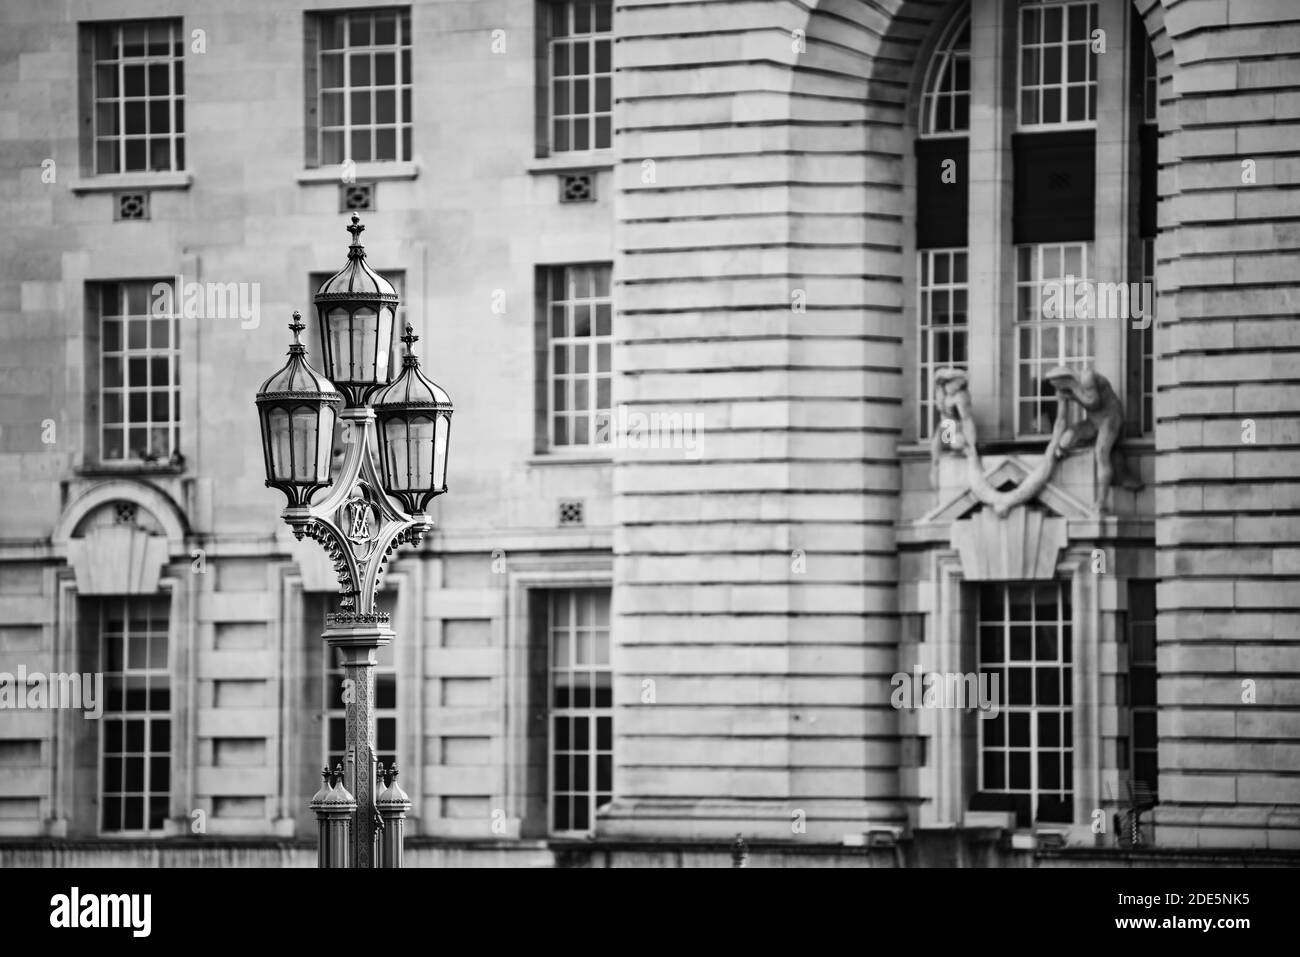 Lampioni in bianco e nero sul Westminster Bridge con architettura londinese alle spalle, paesaggio urbano di edifici e vecchie lampade storiche che mostrano dettagli architettonici di Inghilterra, Regno Unito, Europa Foto Stock